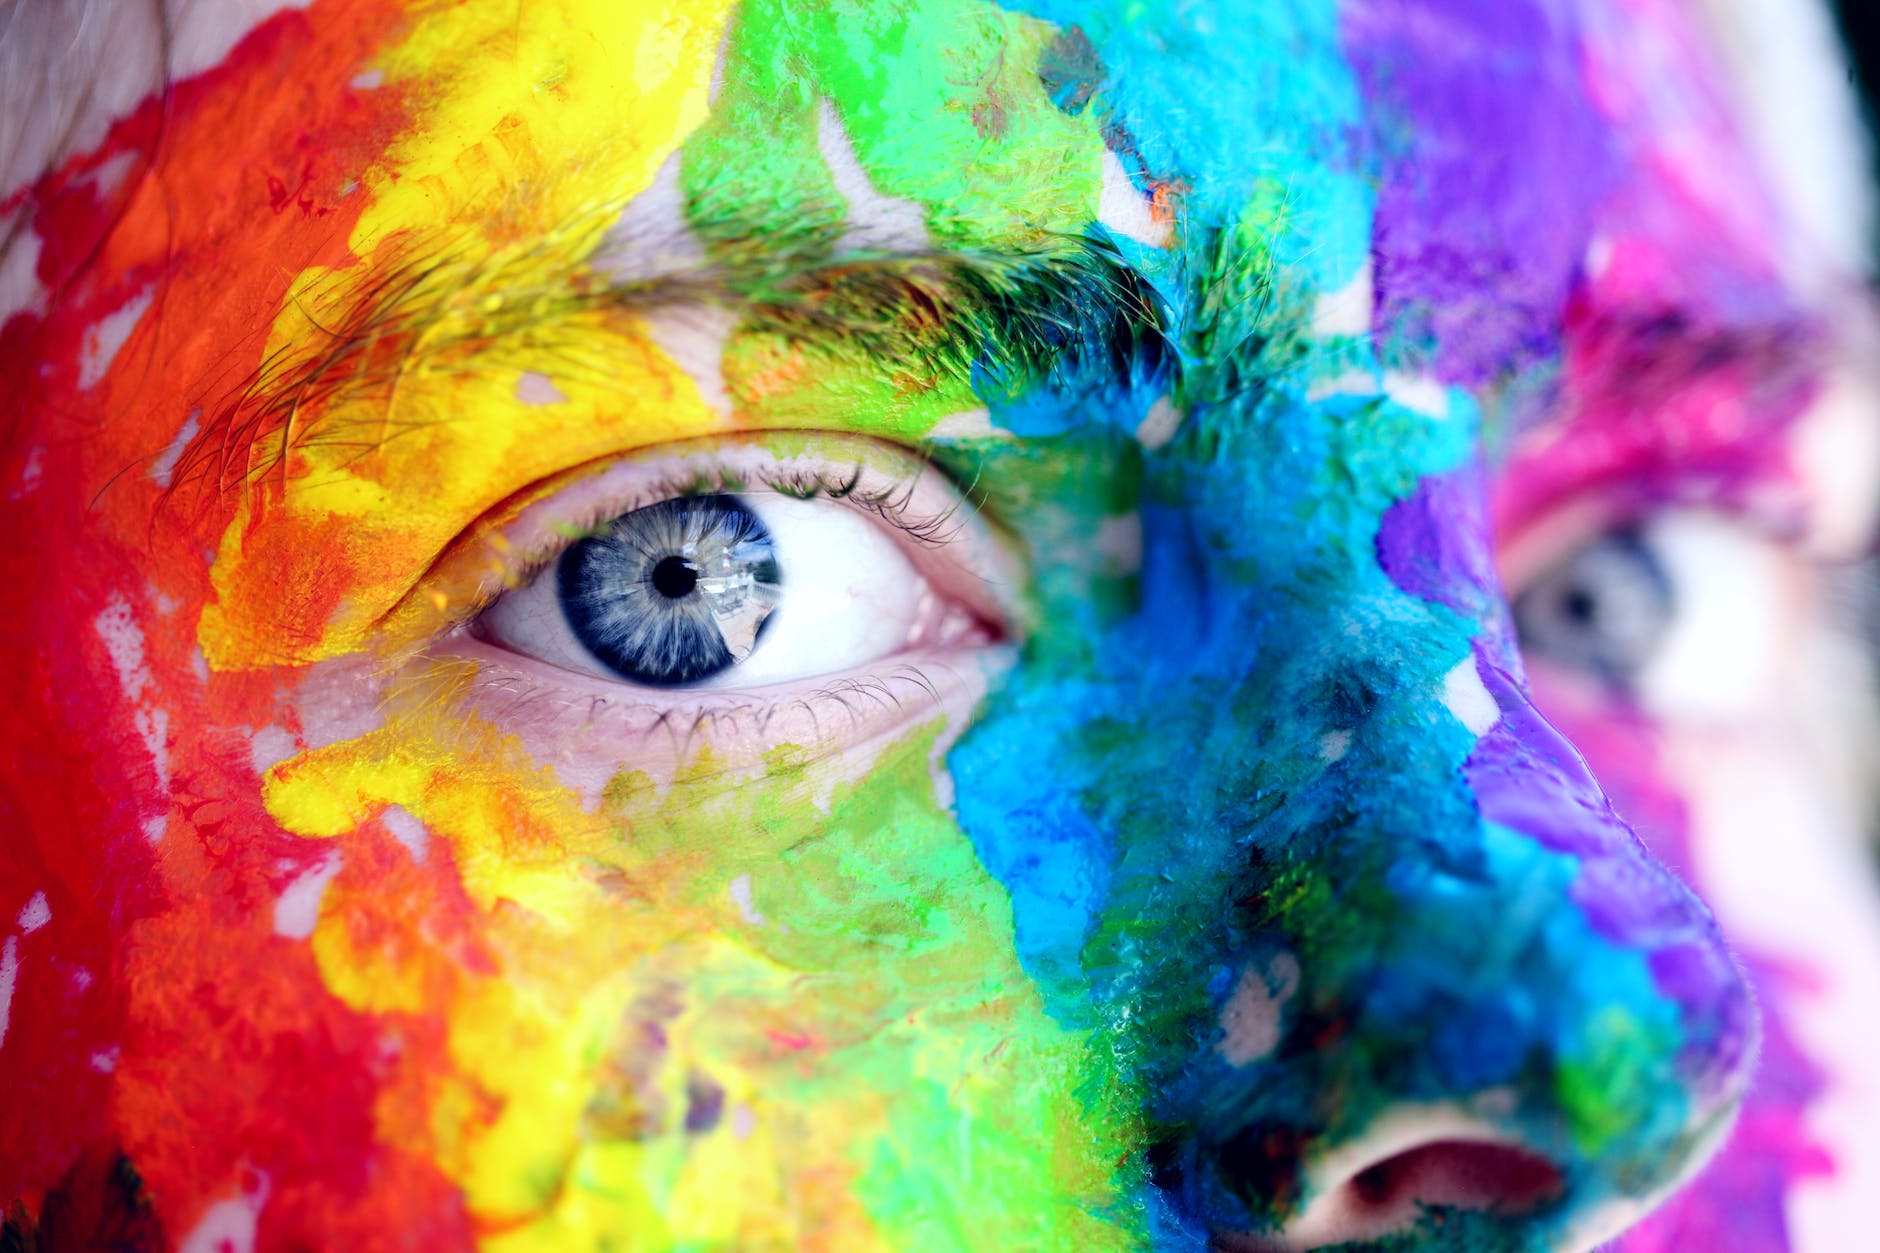 POTENCIAR LA CREATIVIDAD - Creatividad Plástica - un hombre con la cara pintada de colores brillantes.